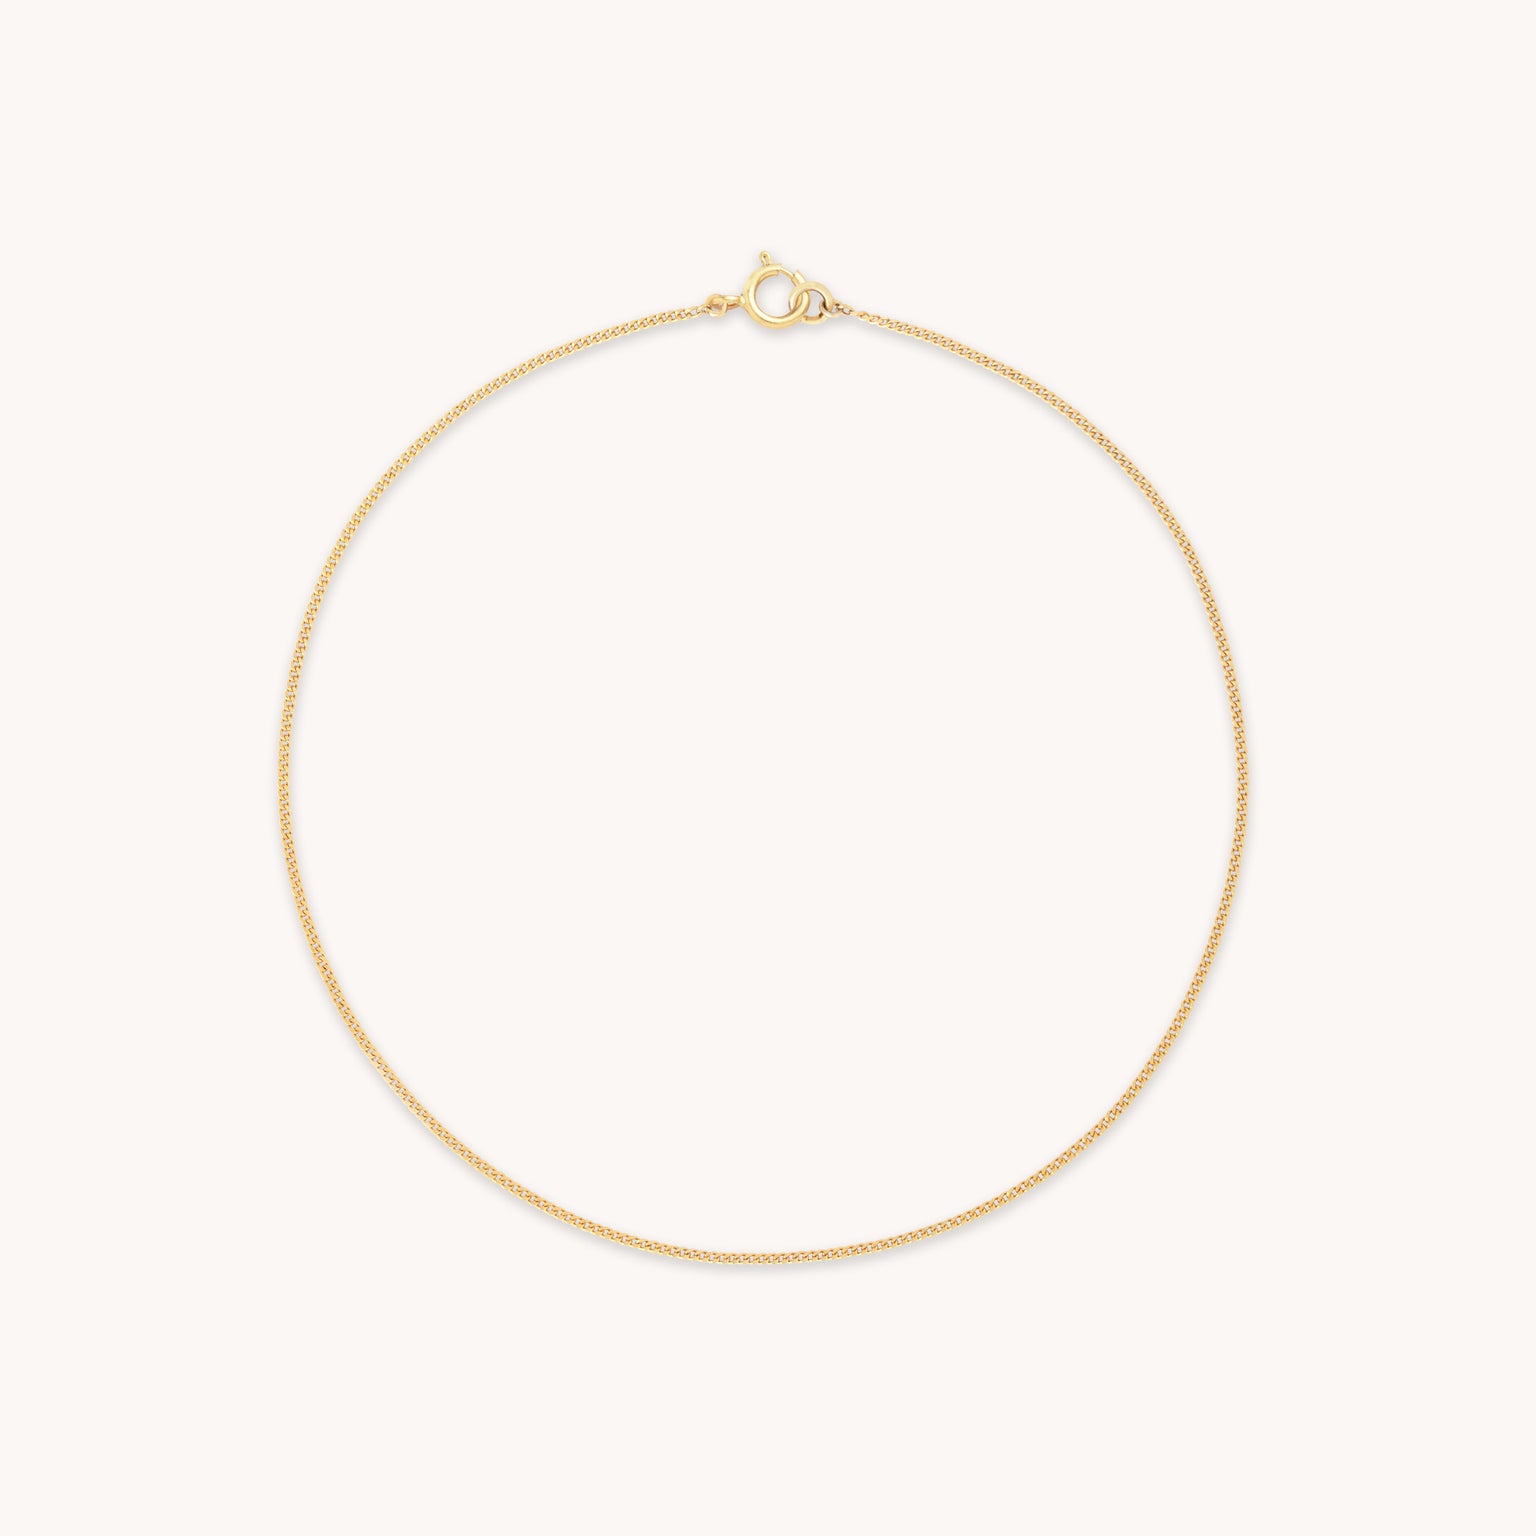 Miyu 9k Gold Chain Bracelet | Astrid & Miyu Bracelets